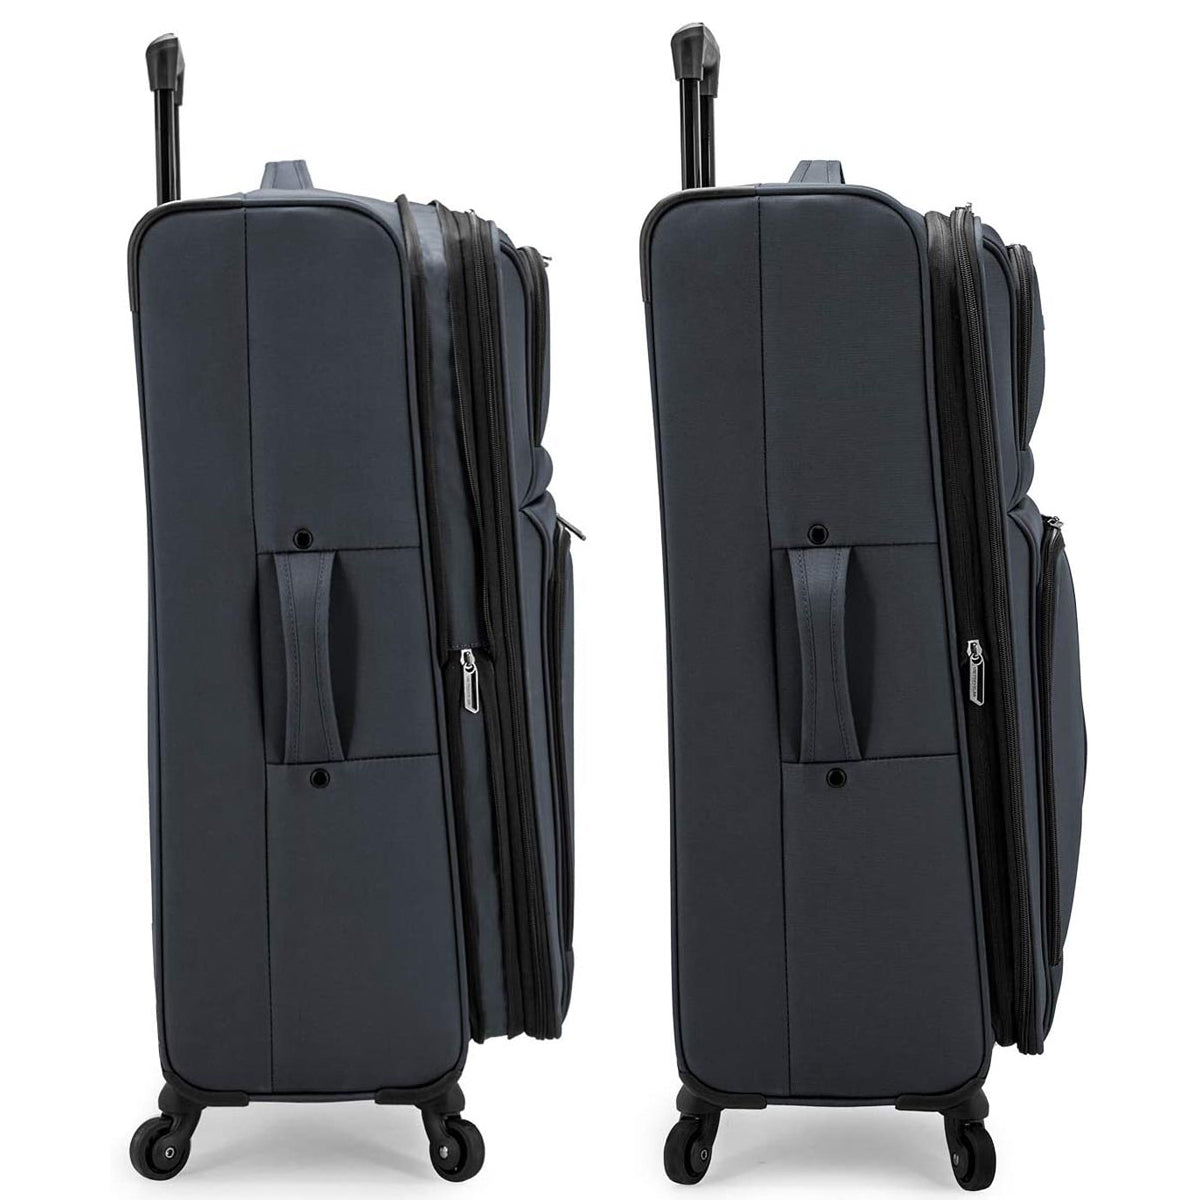 U.S. Traveler Anzio Softside Expandable Spinner Luggage, 3 Piece Set